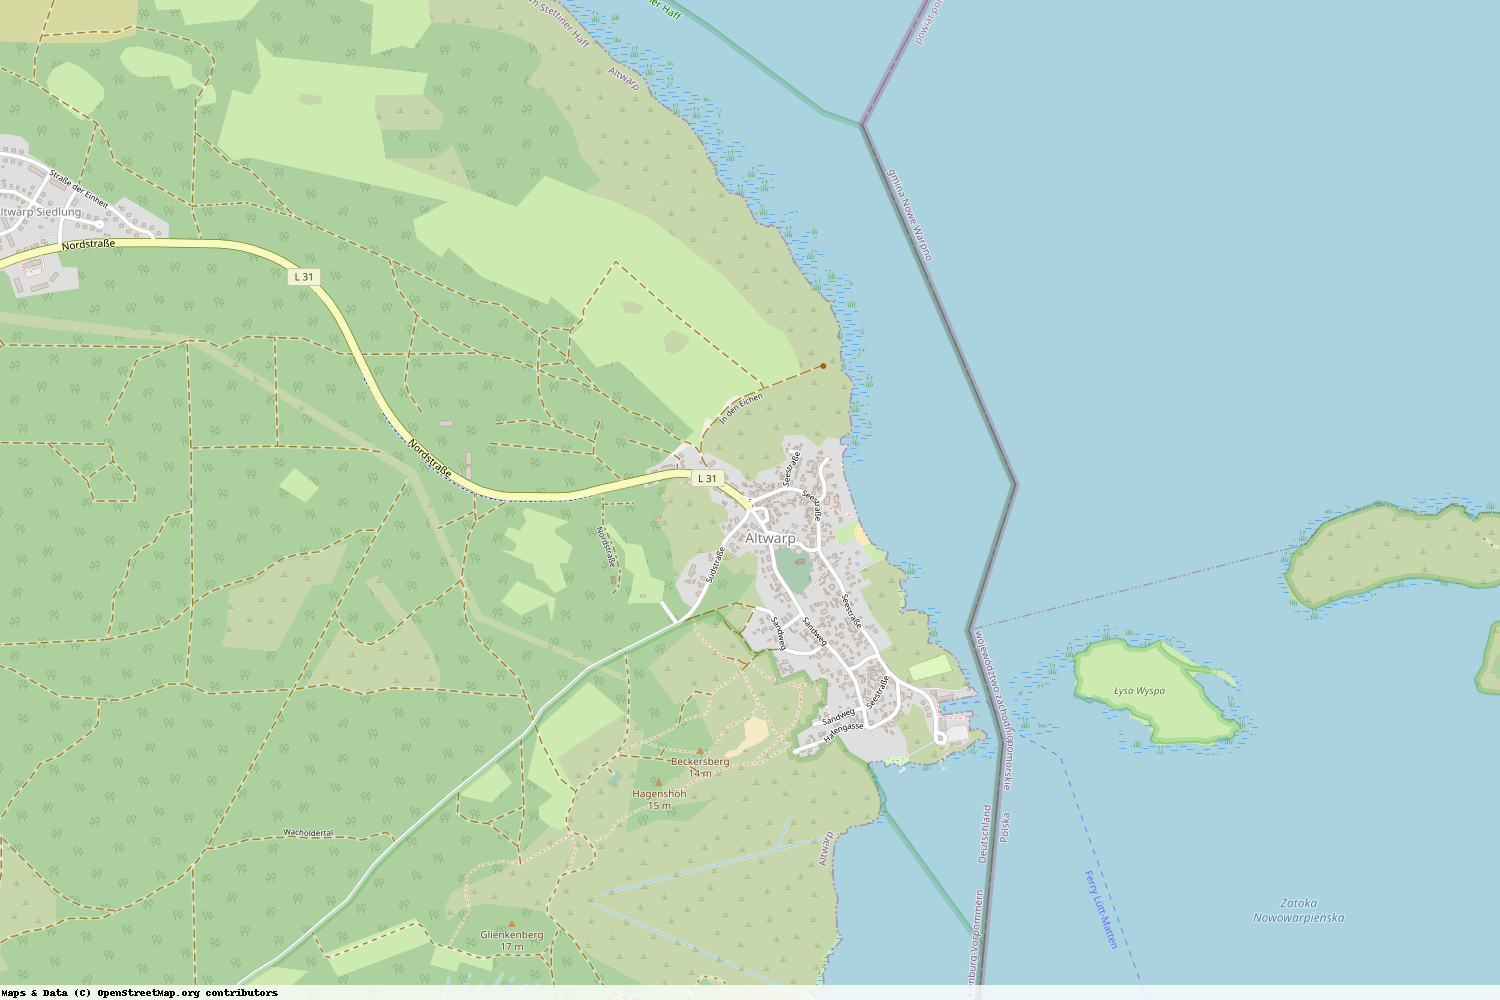 Ist gerade Stromausfall in Mecklenburg-Vorpommern - Vorpommern-Greifswald - Altwarp?